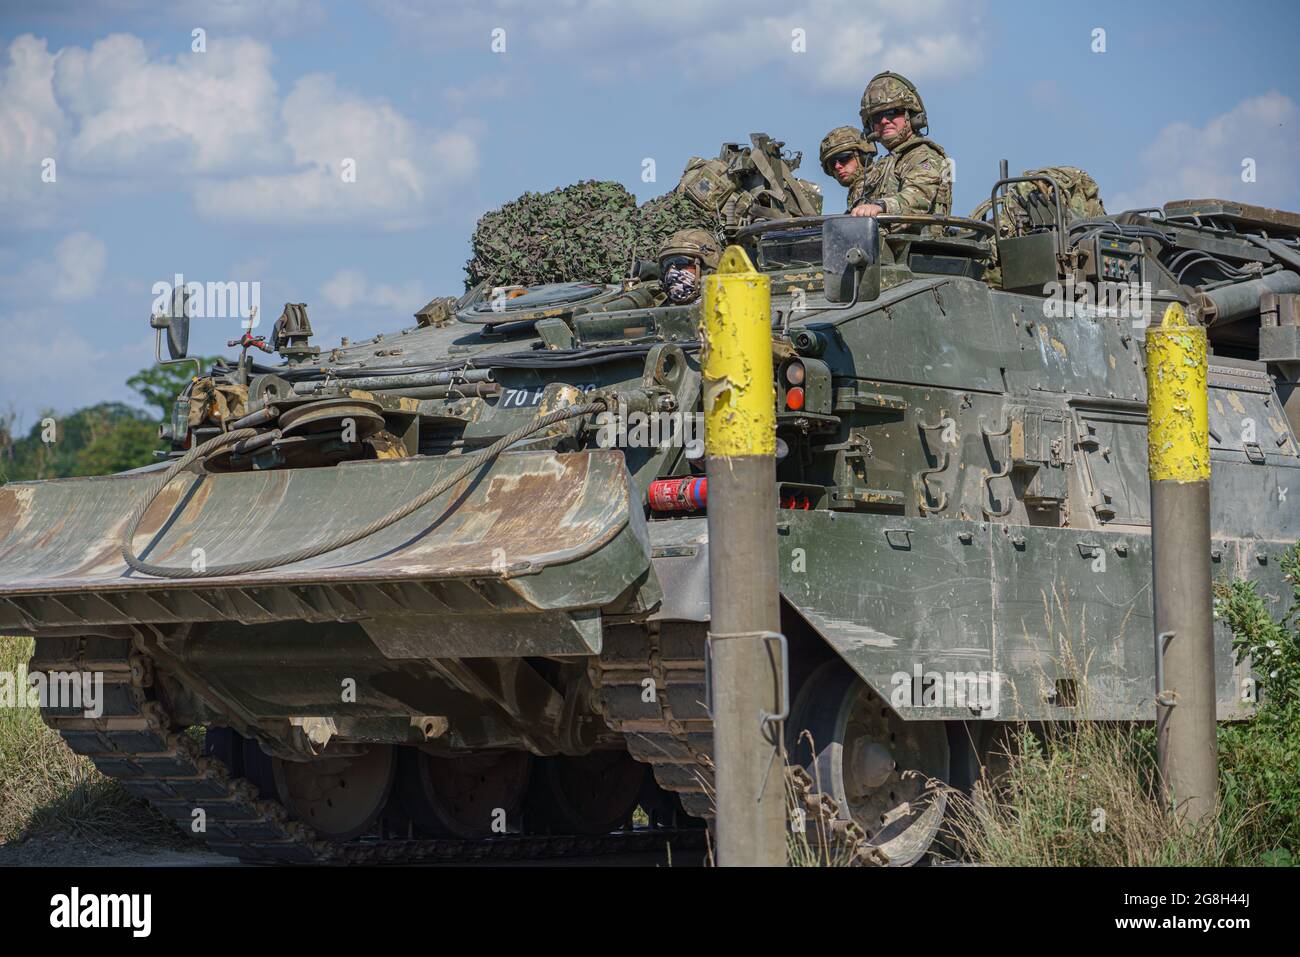 Le Challenger Armored Repair and Recovery Vehicle (CRARRV) de l'armée britannique lors d'un exercice d'entraînement militaire, dans la plaine de salisbury wiltshire Banque D'Images